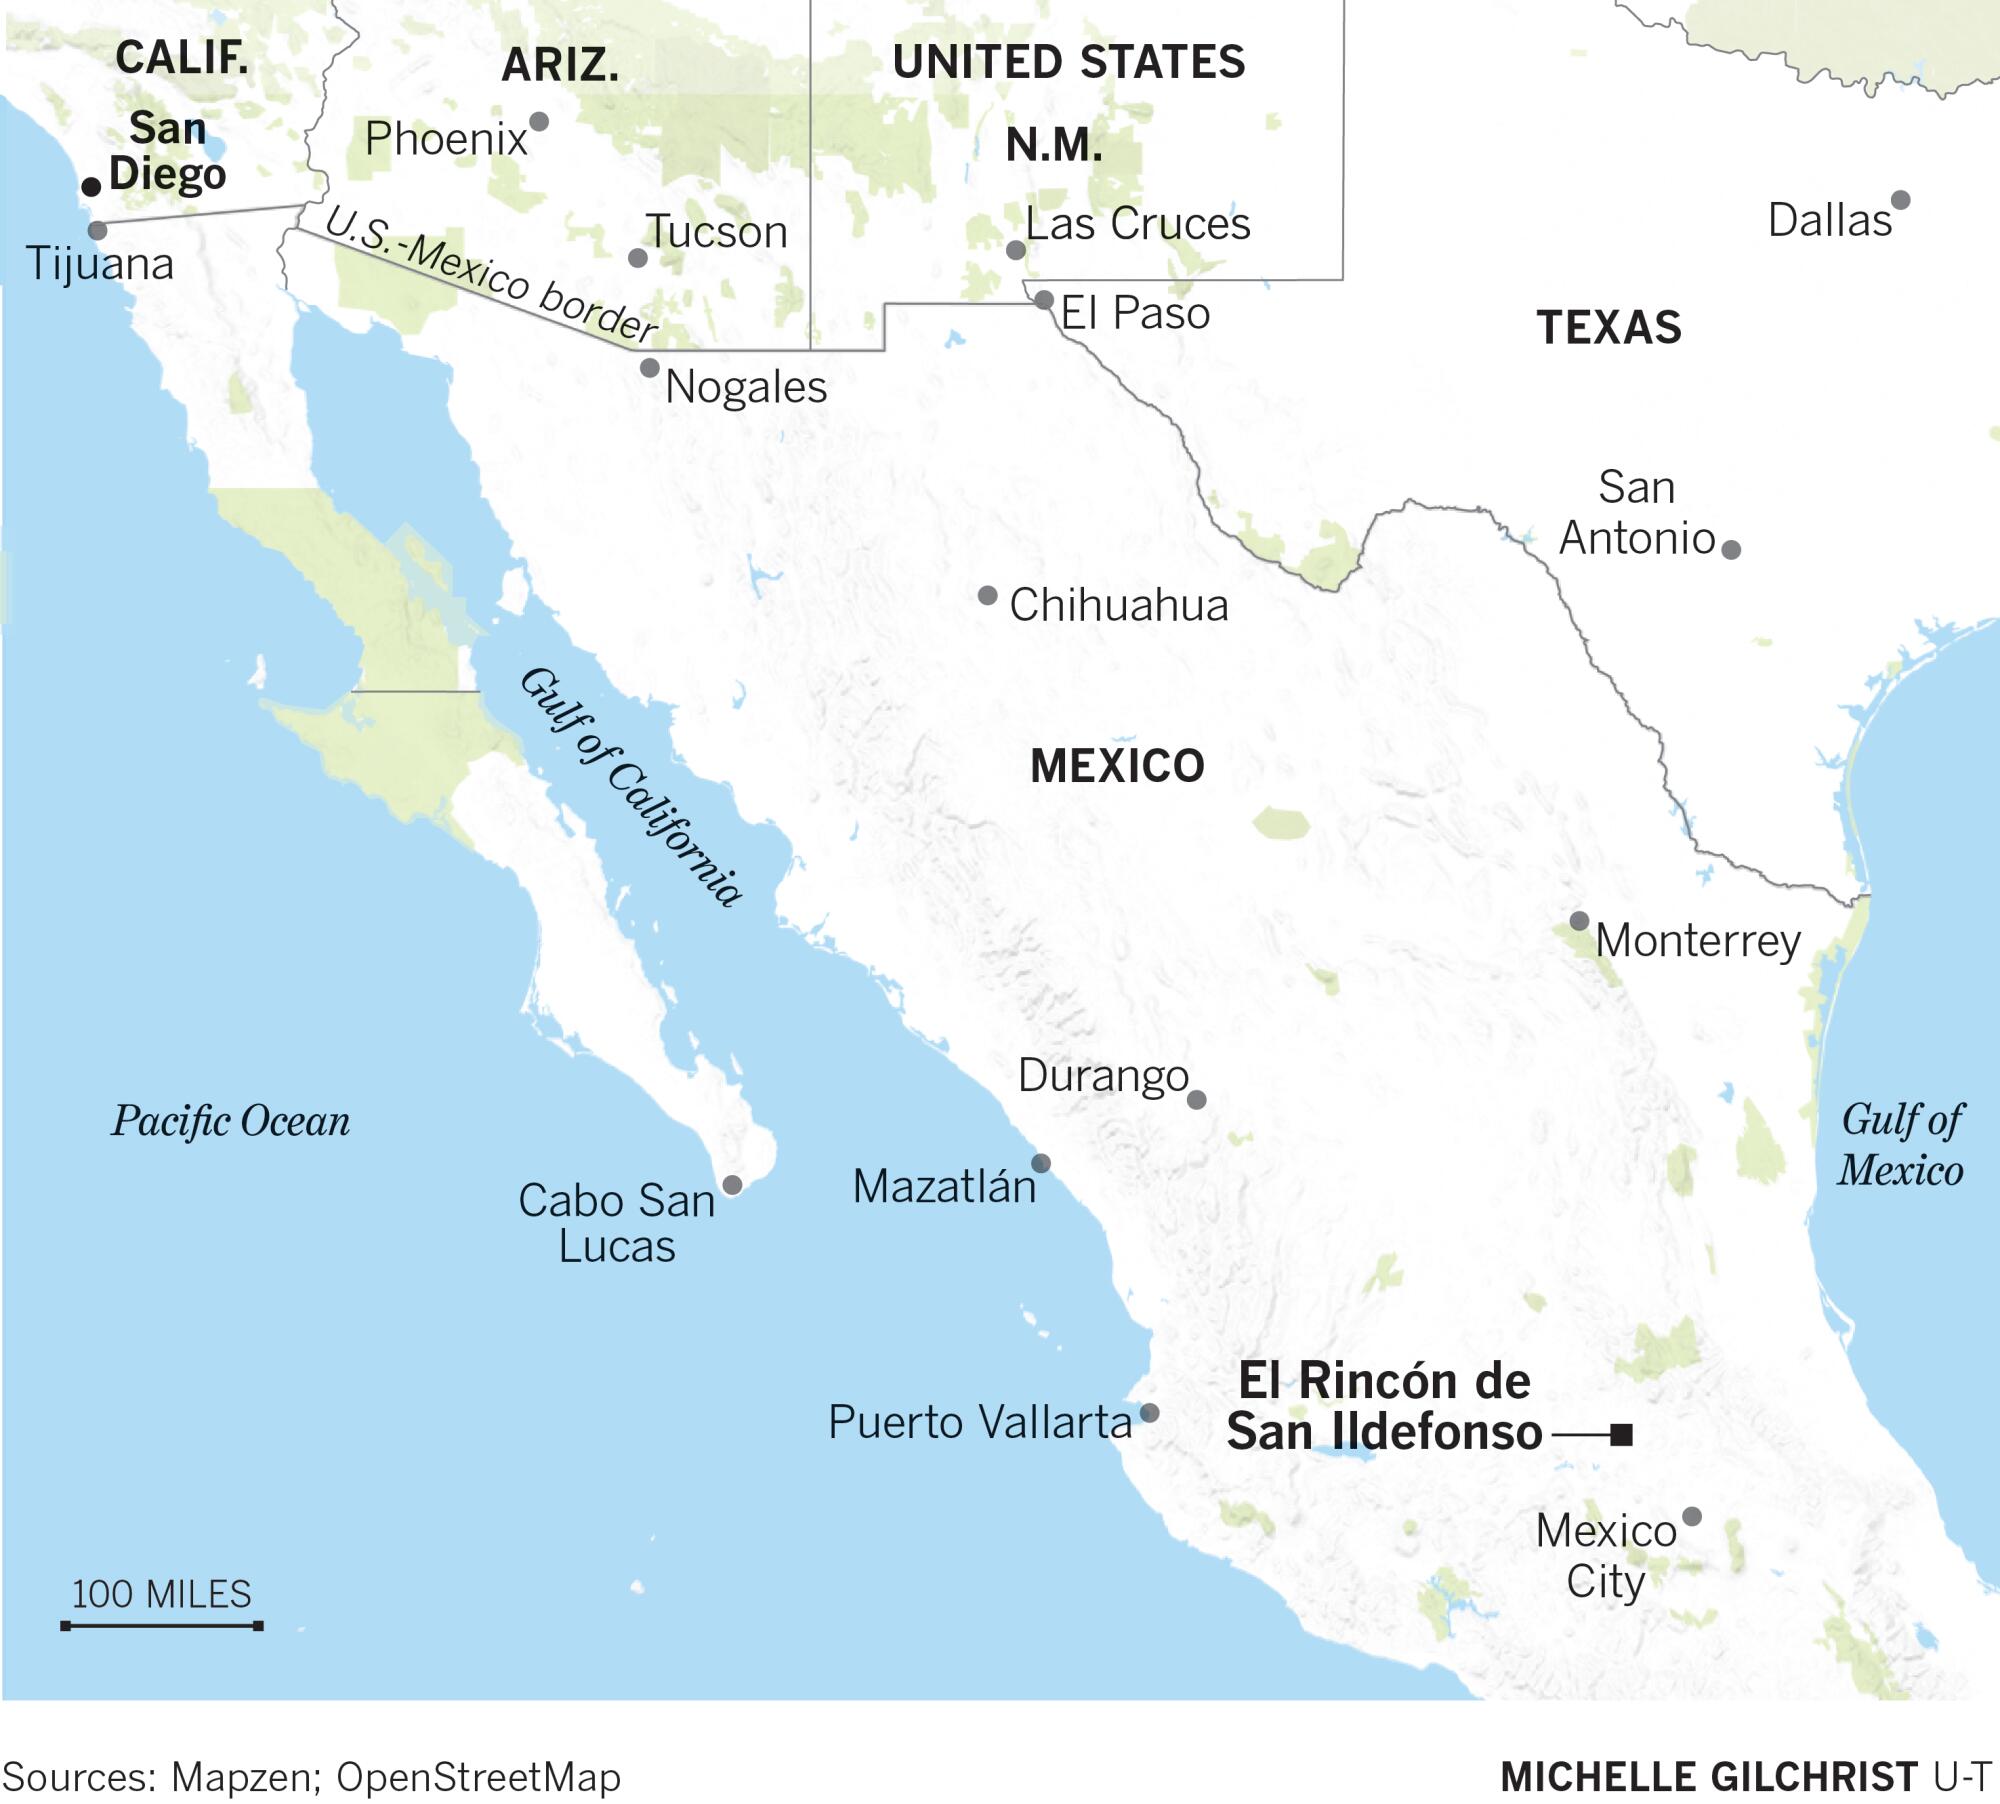 El Rincon de San Ildefonso, Mexico map